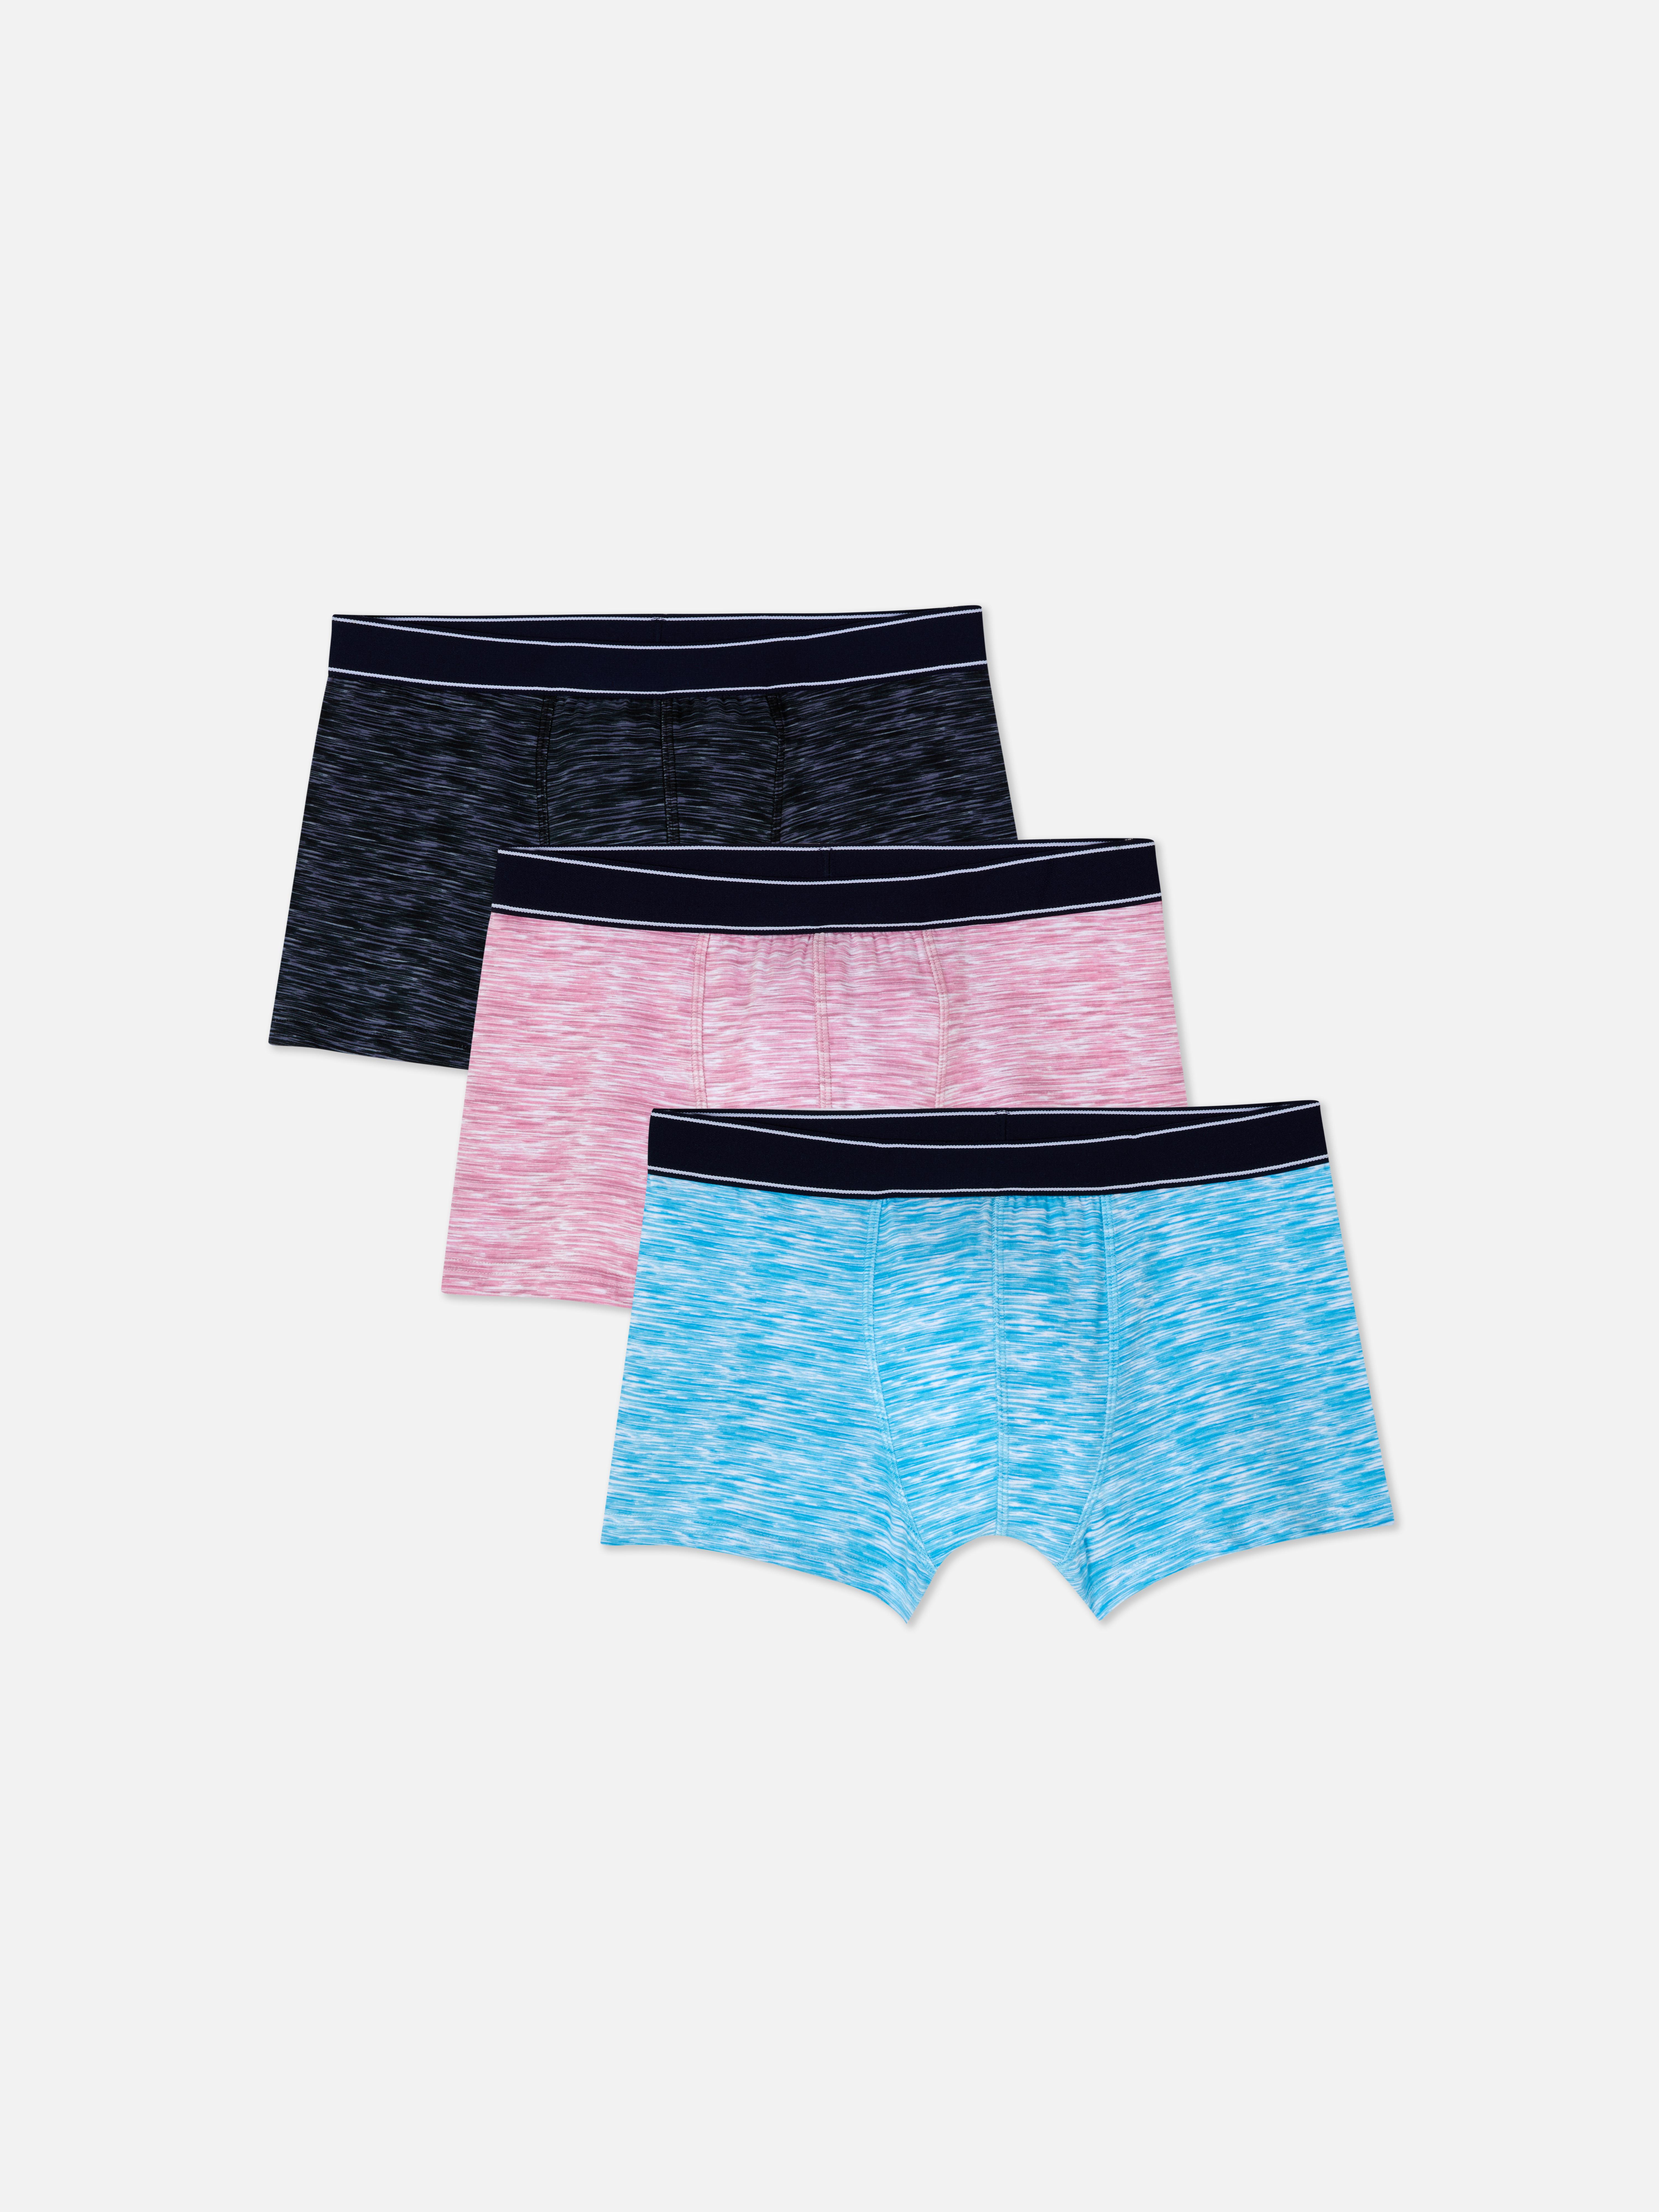 Primark Men's Briefs ; Underwear New Collection